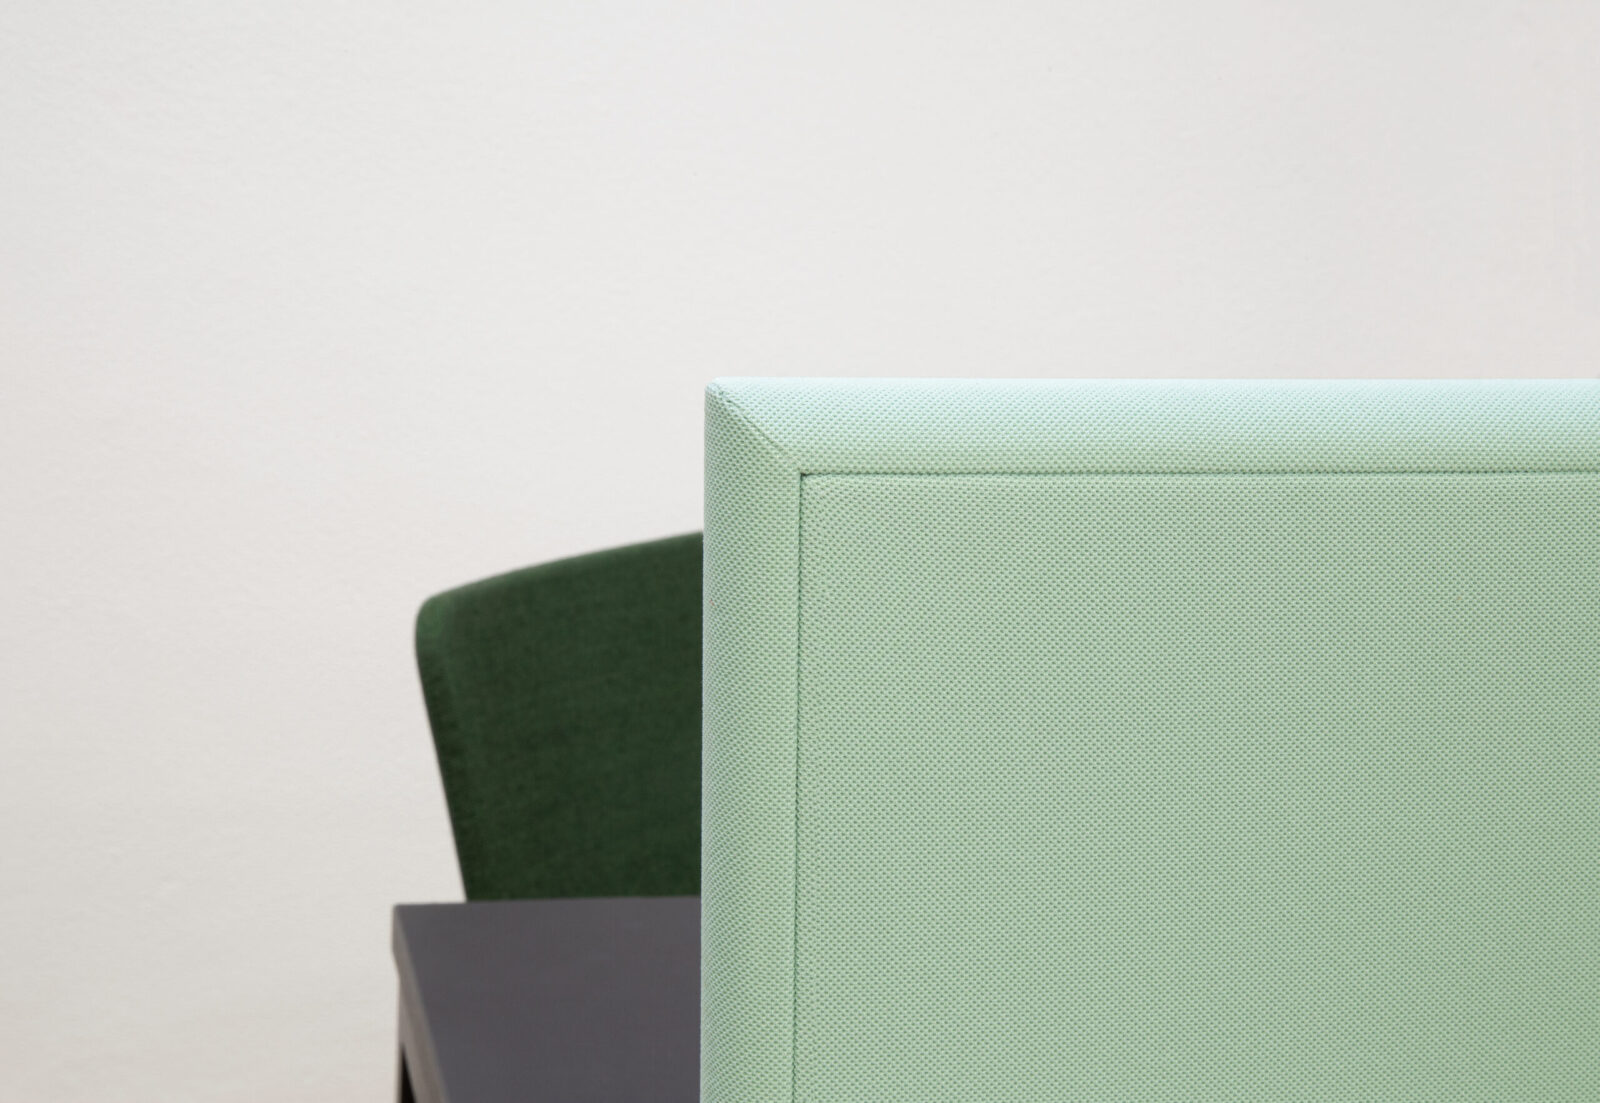 Bildausschnitt zeigt einen Teil einer textilumspannten Tischaufsatzwand. Der Stoff ist hellgrün. Dahinter steht ein schwarzer Tisch mit grünem Stuhl.